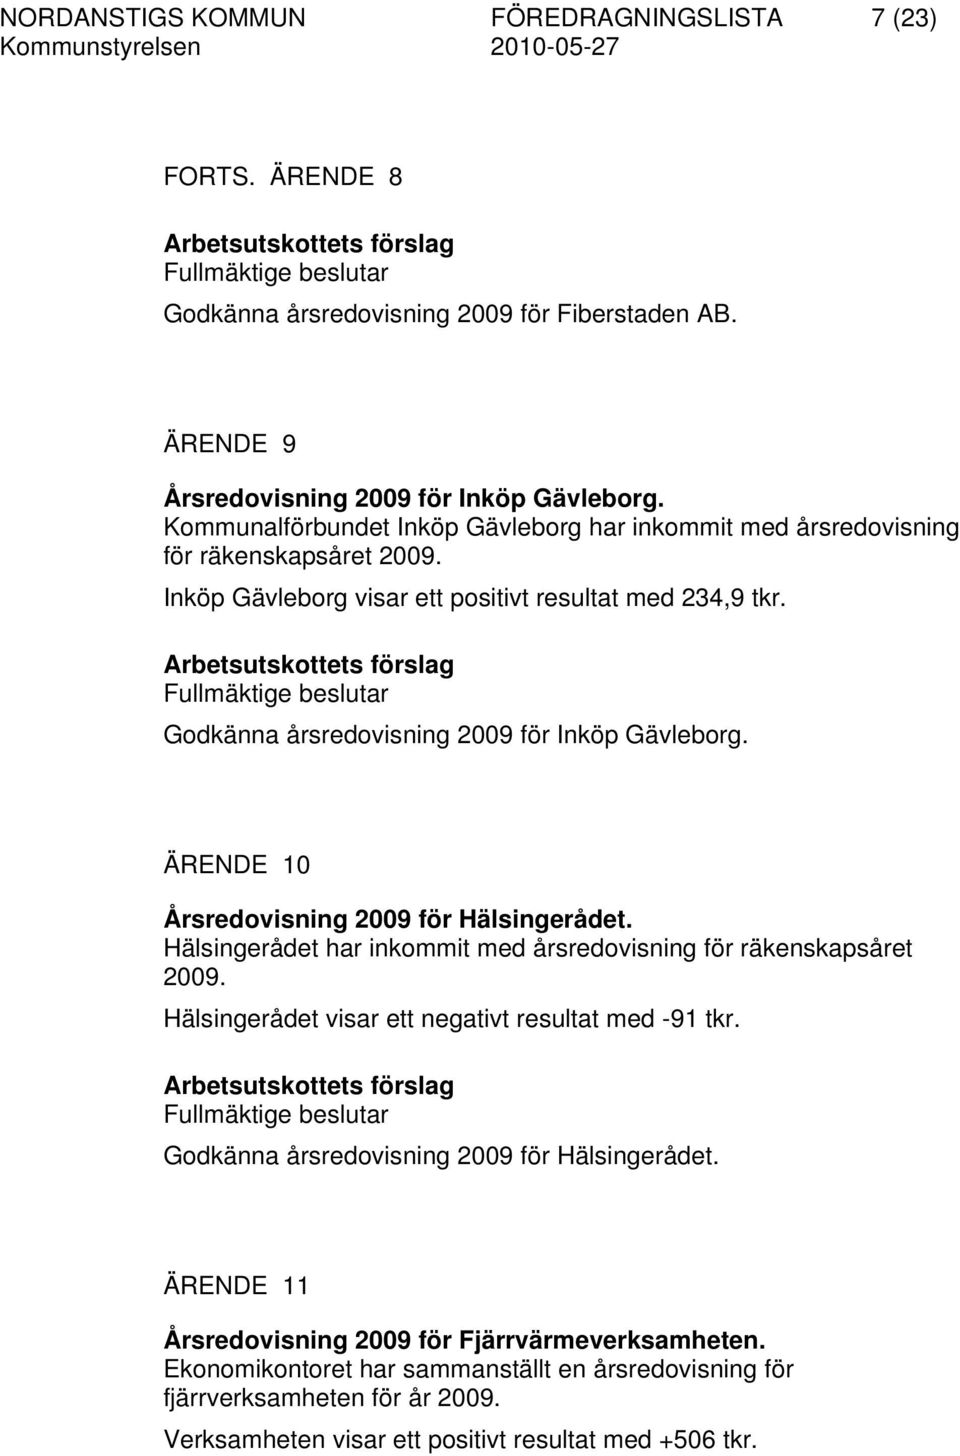 Fullmäktige beslutar Godkänna årsredovisning 2009 för Inköp Gävleborg. ÄRENDE 10 Årsredovisning 2009 för Hälsingerådet. Hälsingerådet har inkommit med årsredovisning för räkenskapsåret 2009.